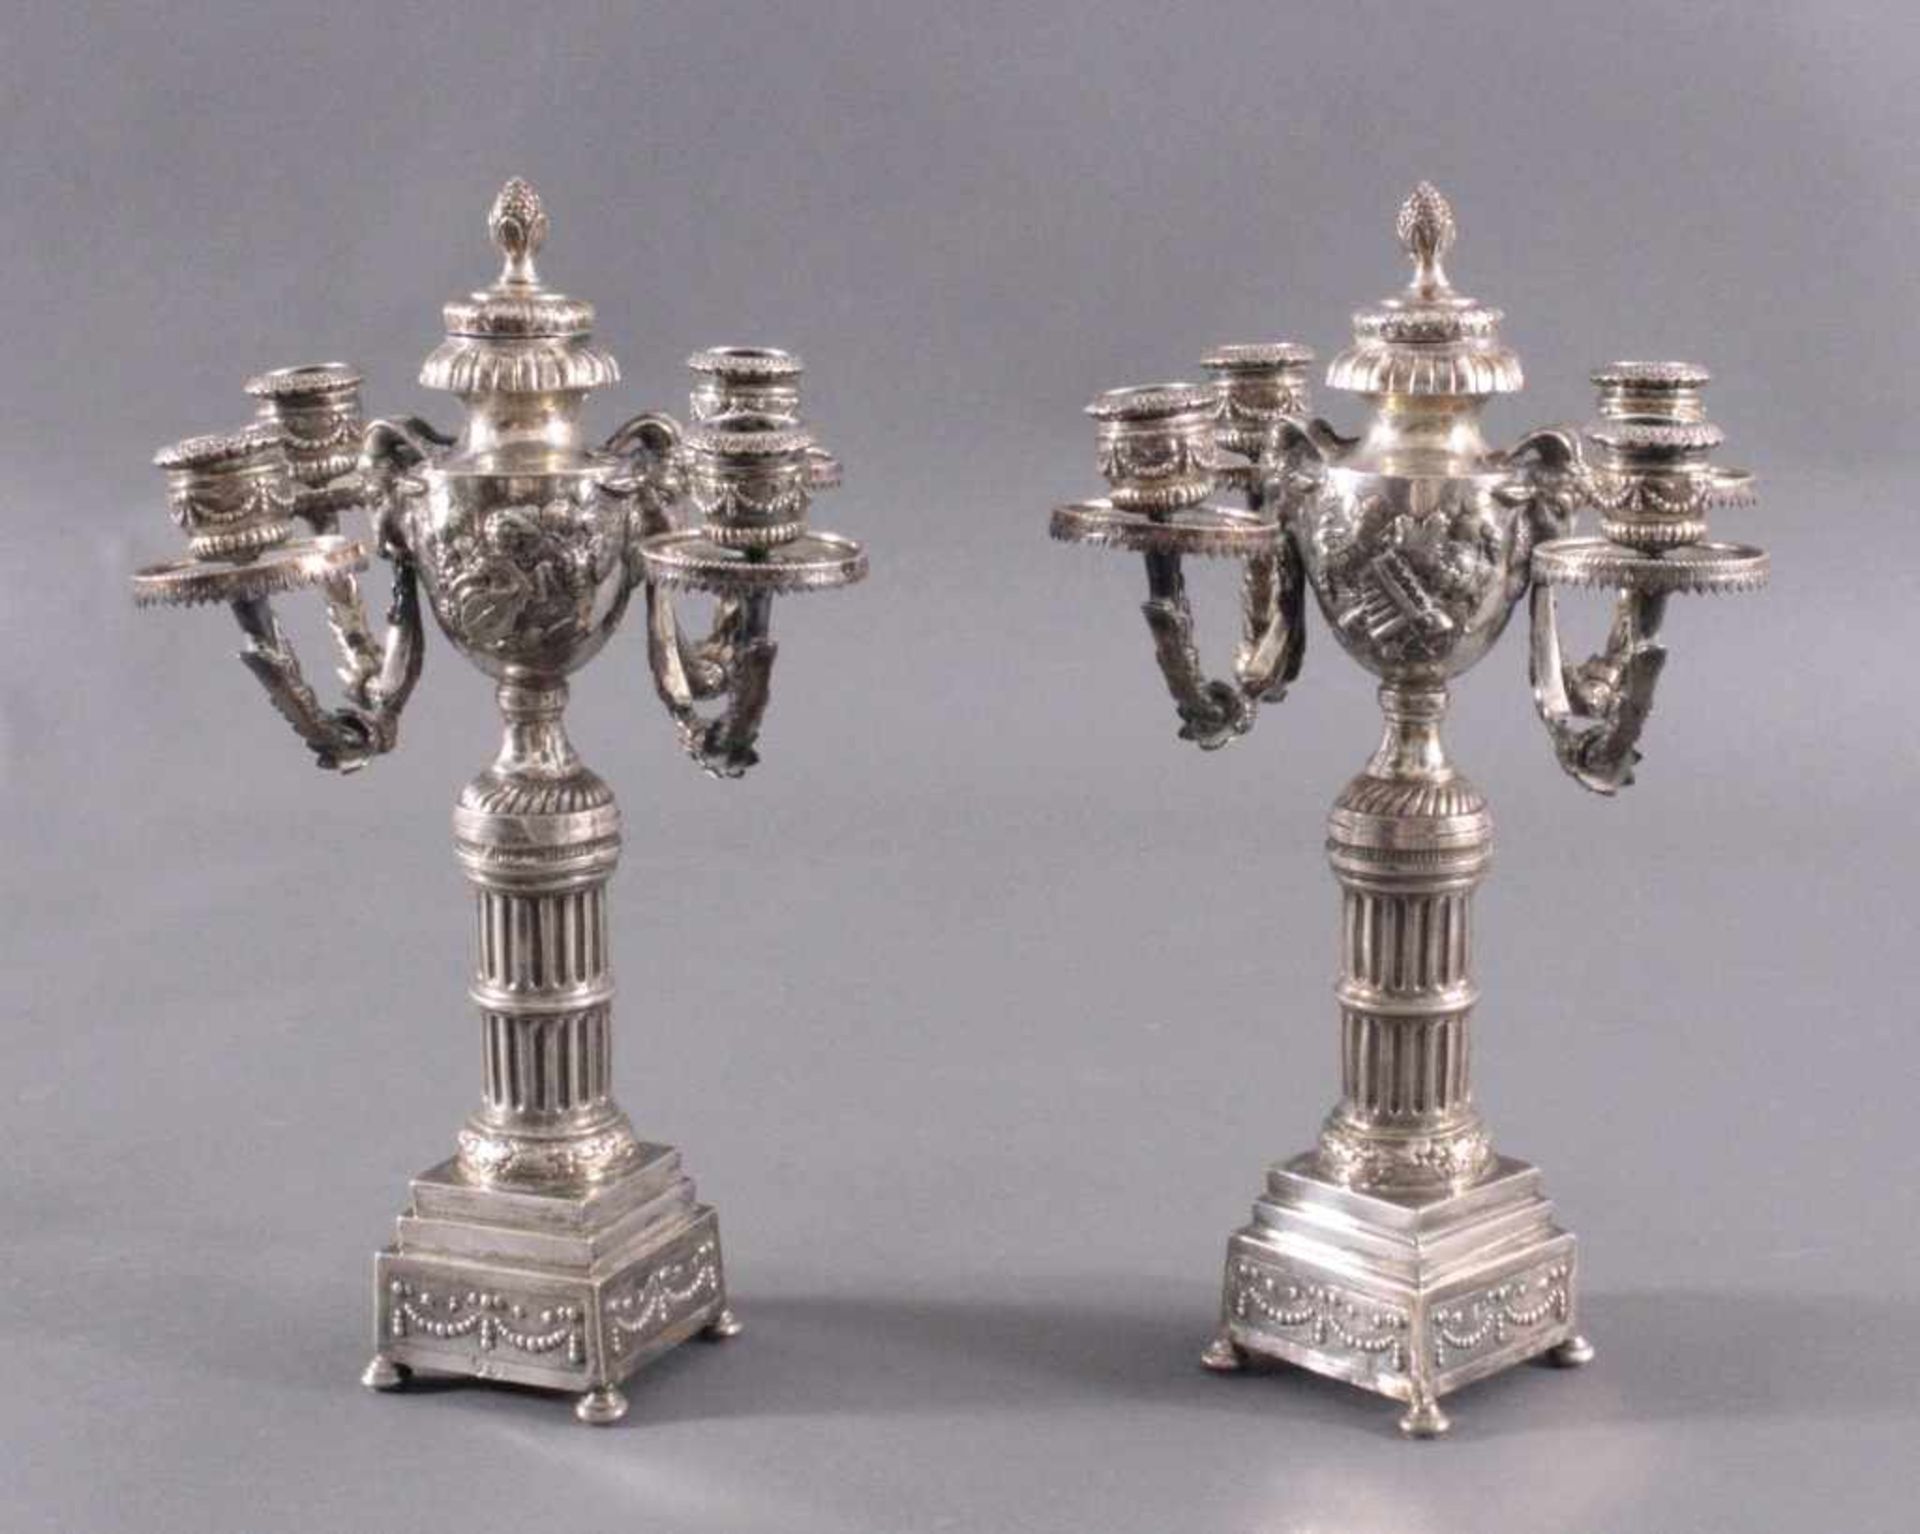 Paar silberne Empire KerzenleuchterUm 1800, auf viereckigen Sockel, getragen von vier rundenFüßen.